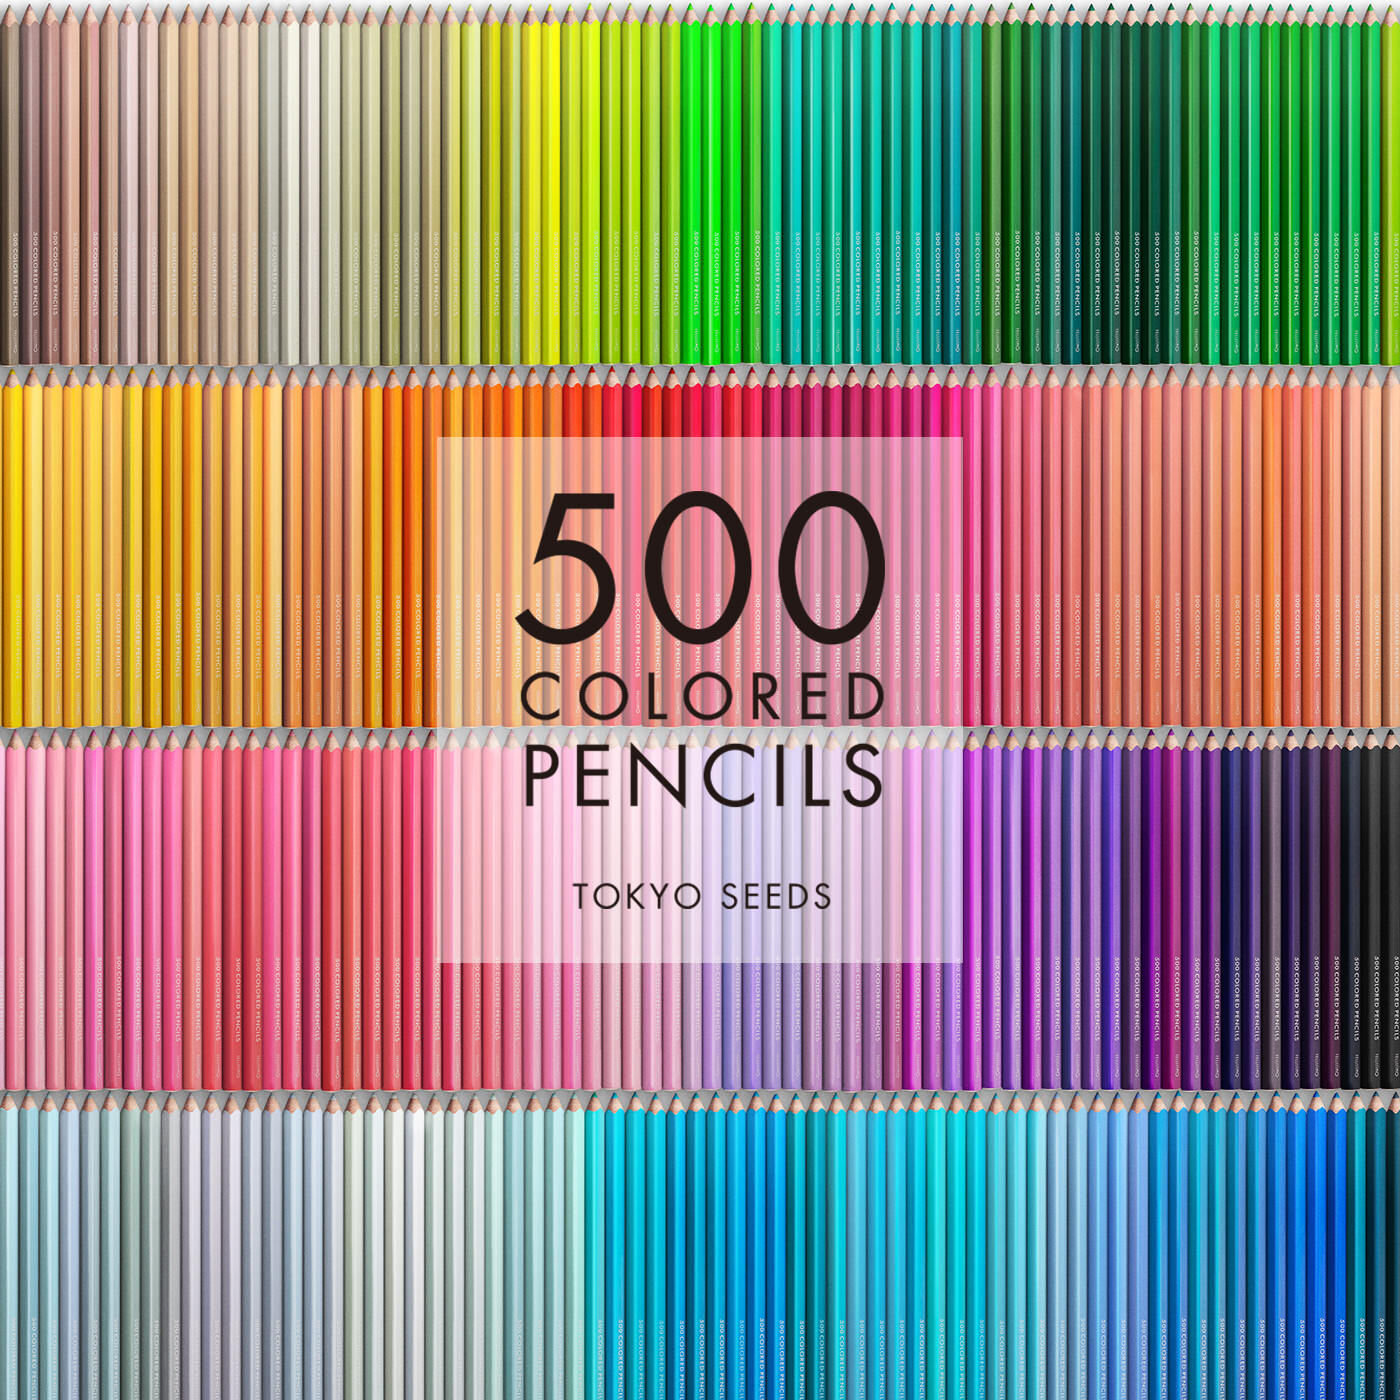 Real Stock|【80/500 SHRIMP TACO】500色の色えんぴつ TOKYO SEEDS|1992年、世界初の「500色」という膨大な色数の色えんぴつが誕生して以来、その販売数は発売当初から合わせると、世界55ヵ国10万セット以上。今回、メイド・イン・ジャパンにこだわり、すべてが新しく生まれ変わって登場しました。